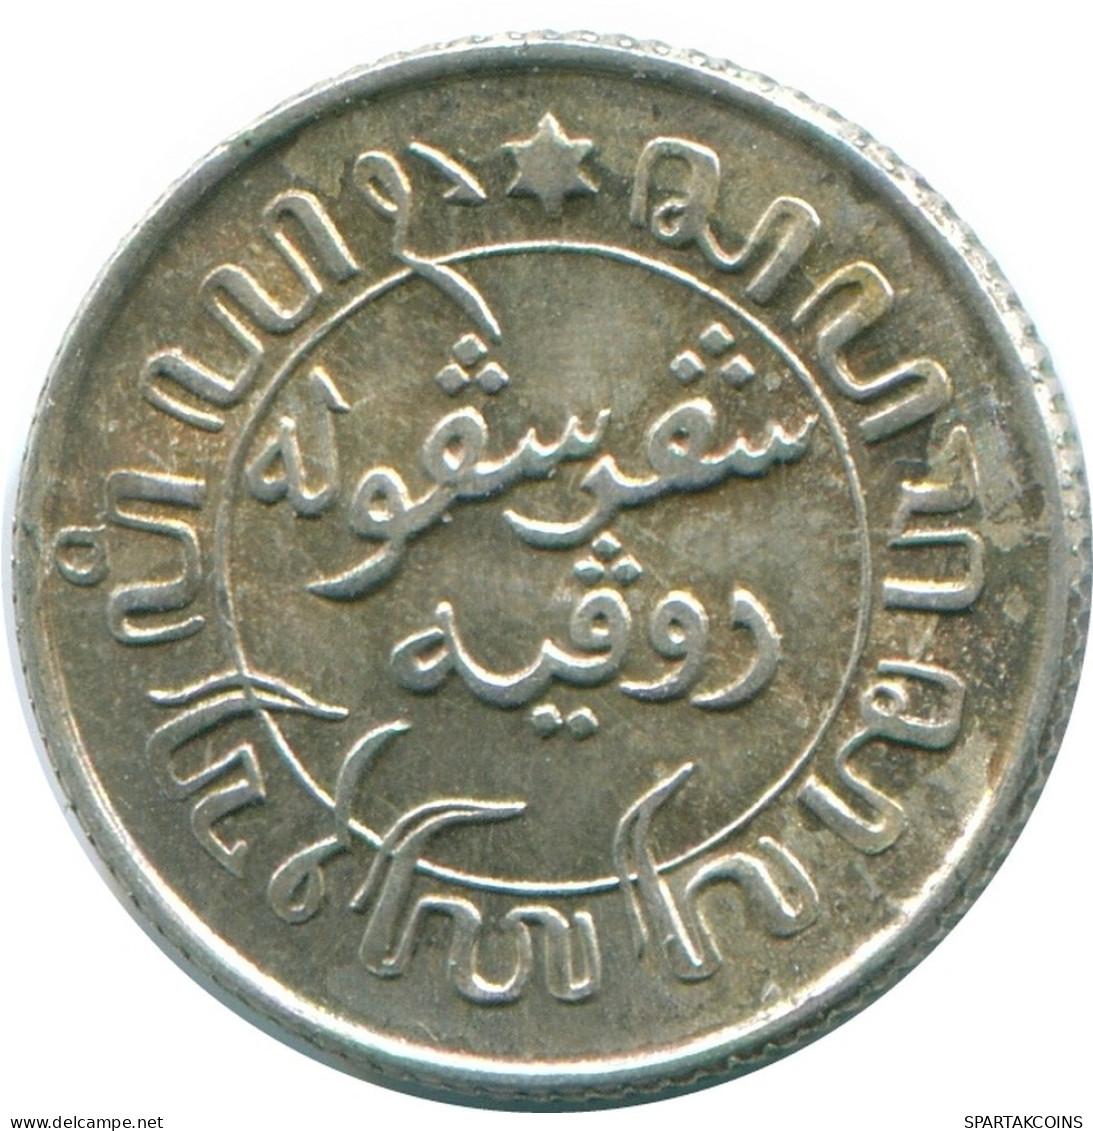 1/10 GULDEN 1945 P NIEDERLANDE OSTINDIEN SILBER Koloniale Münze #NL14177.3.D.A - Niederländisch-Indien